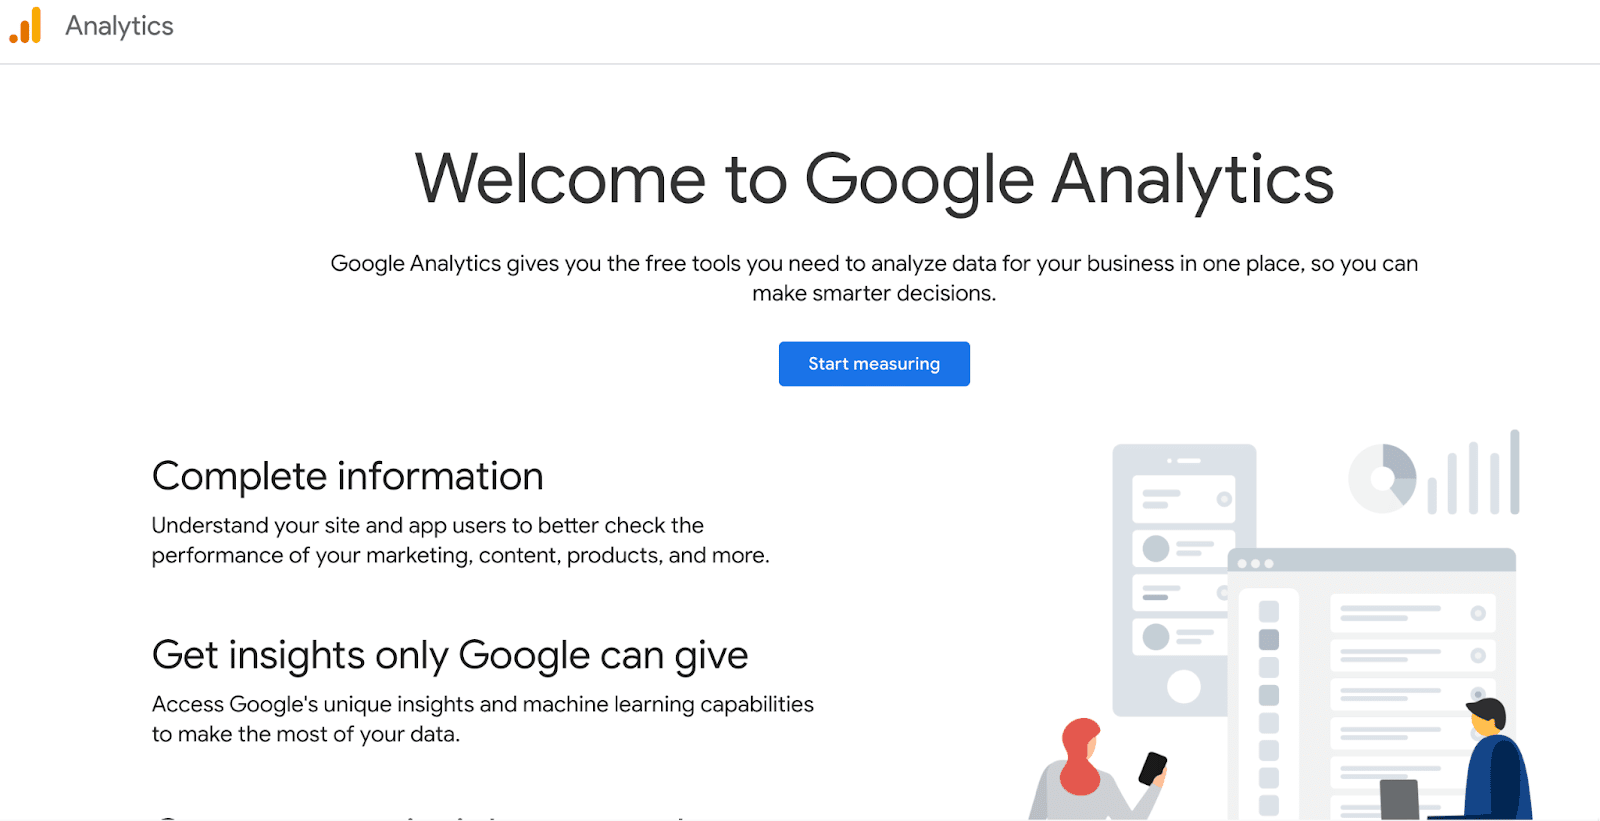 The homepage of Google Analytics